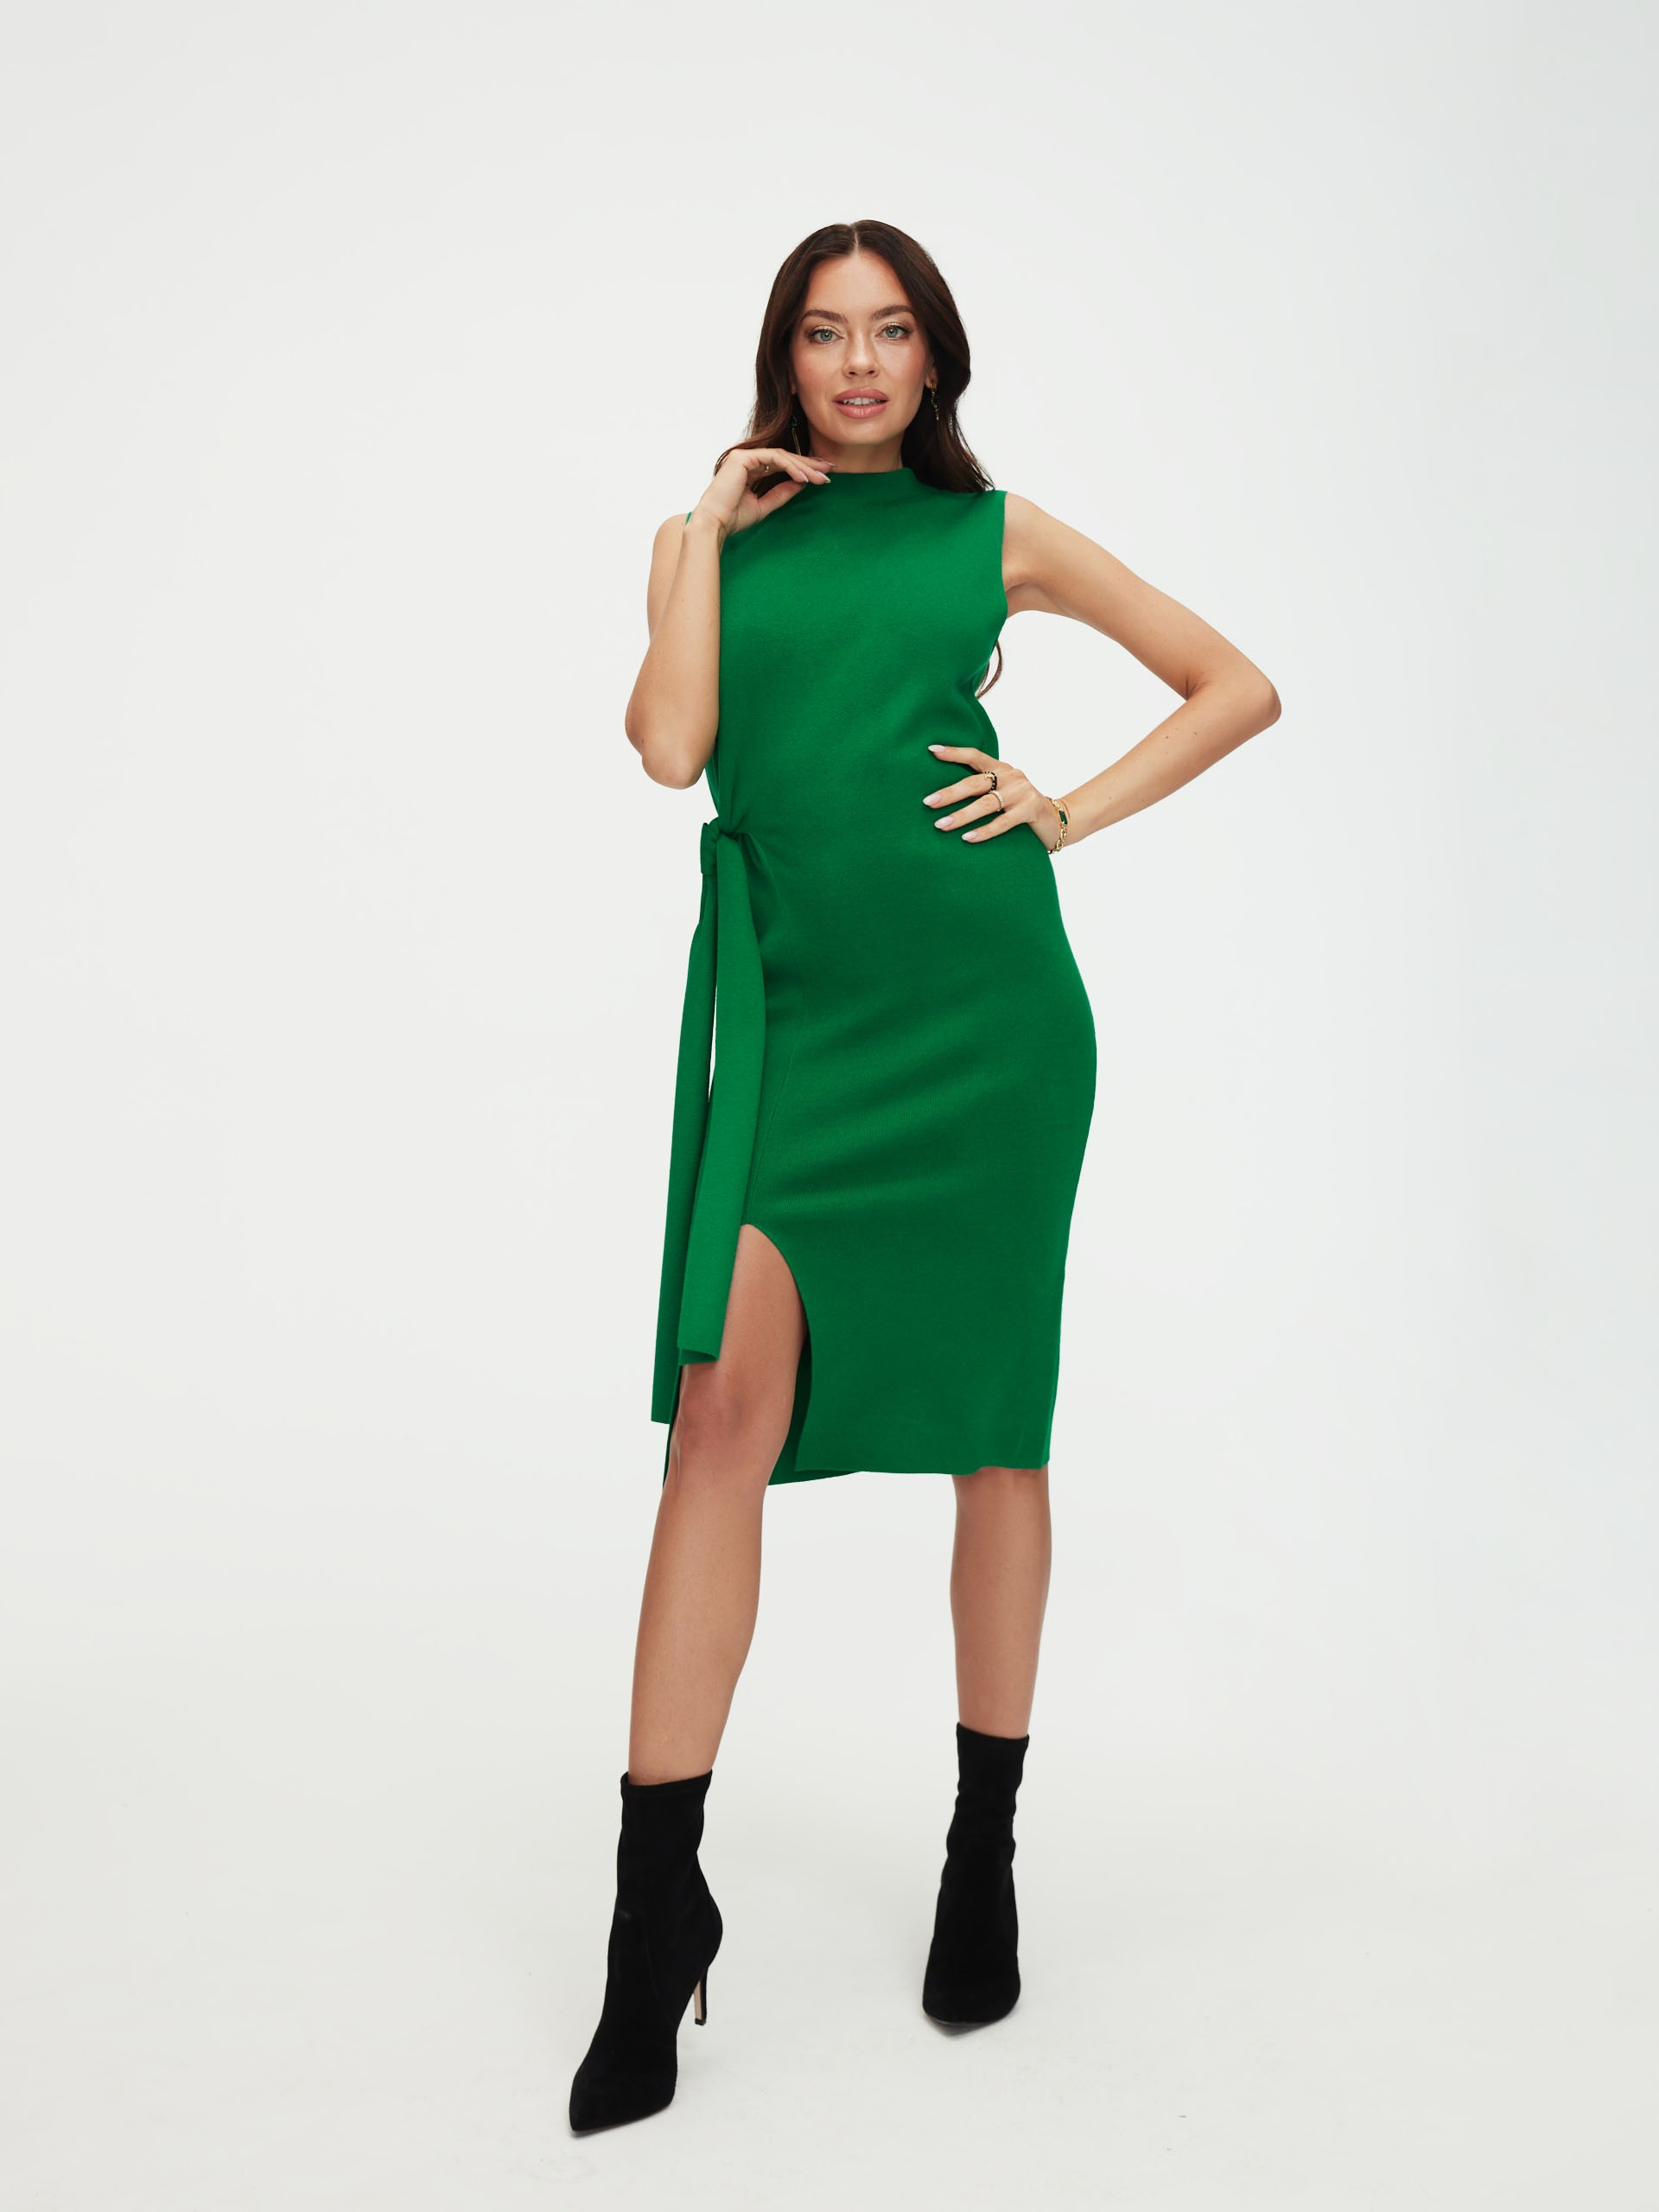 Green sleeveless dress